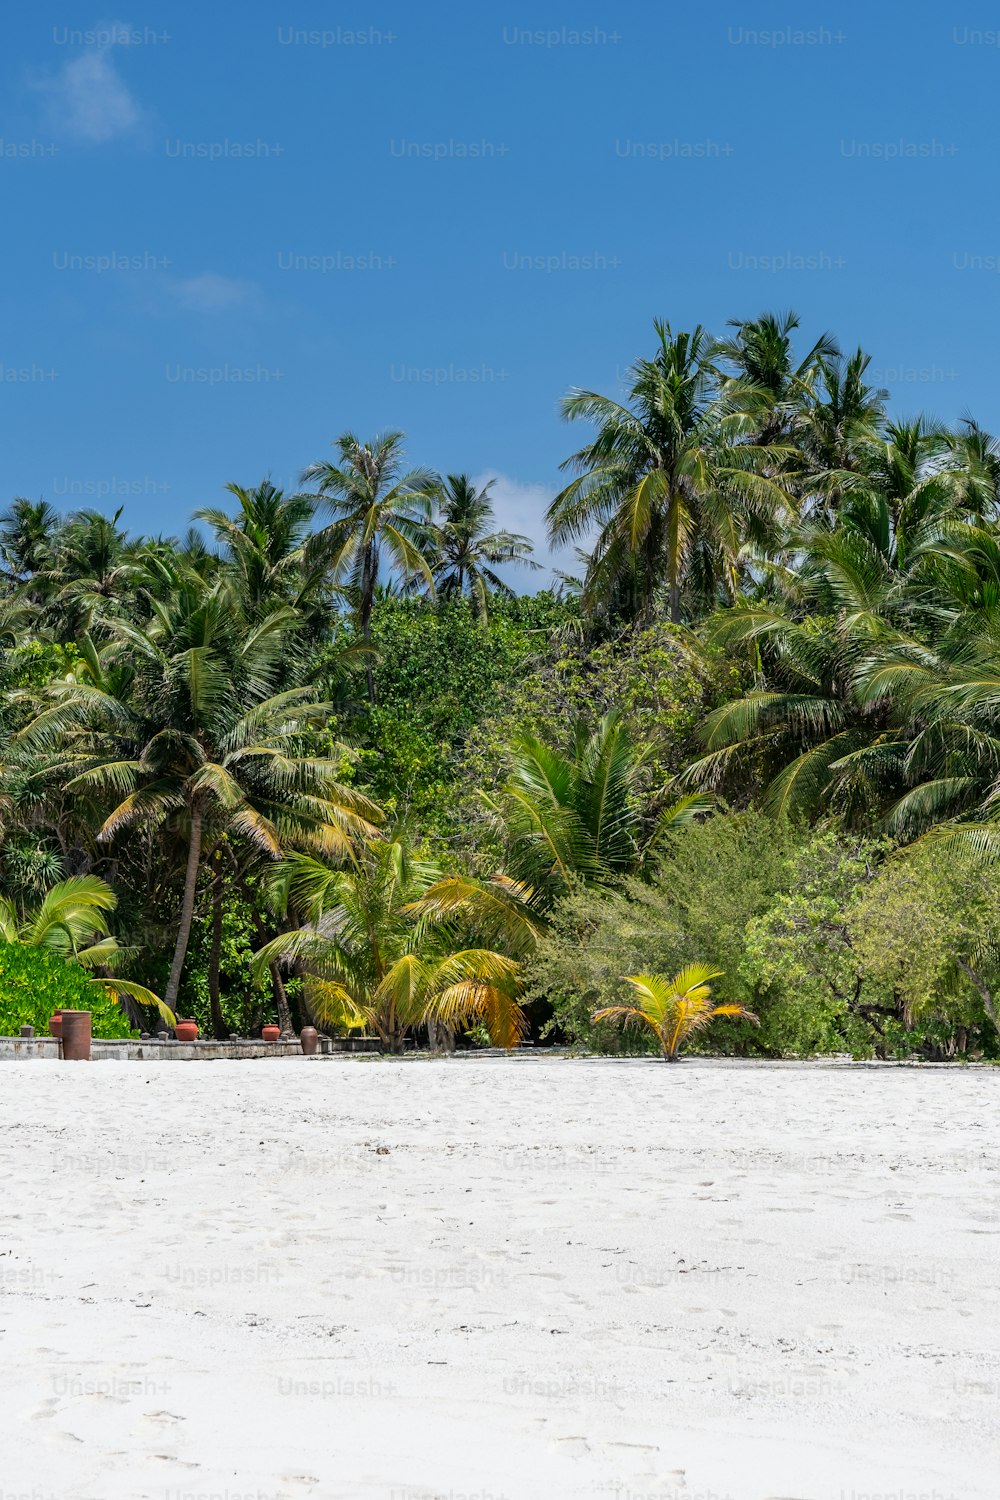 Una playa de arena blanca rodeada de palmeras